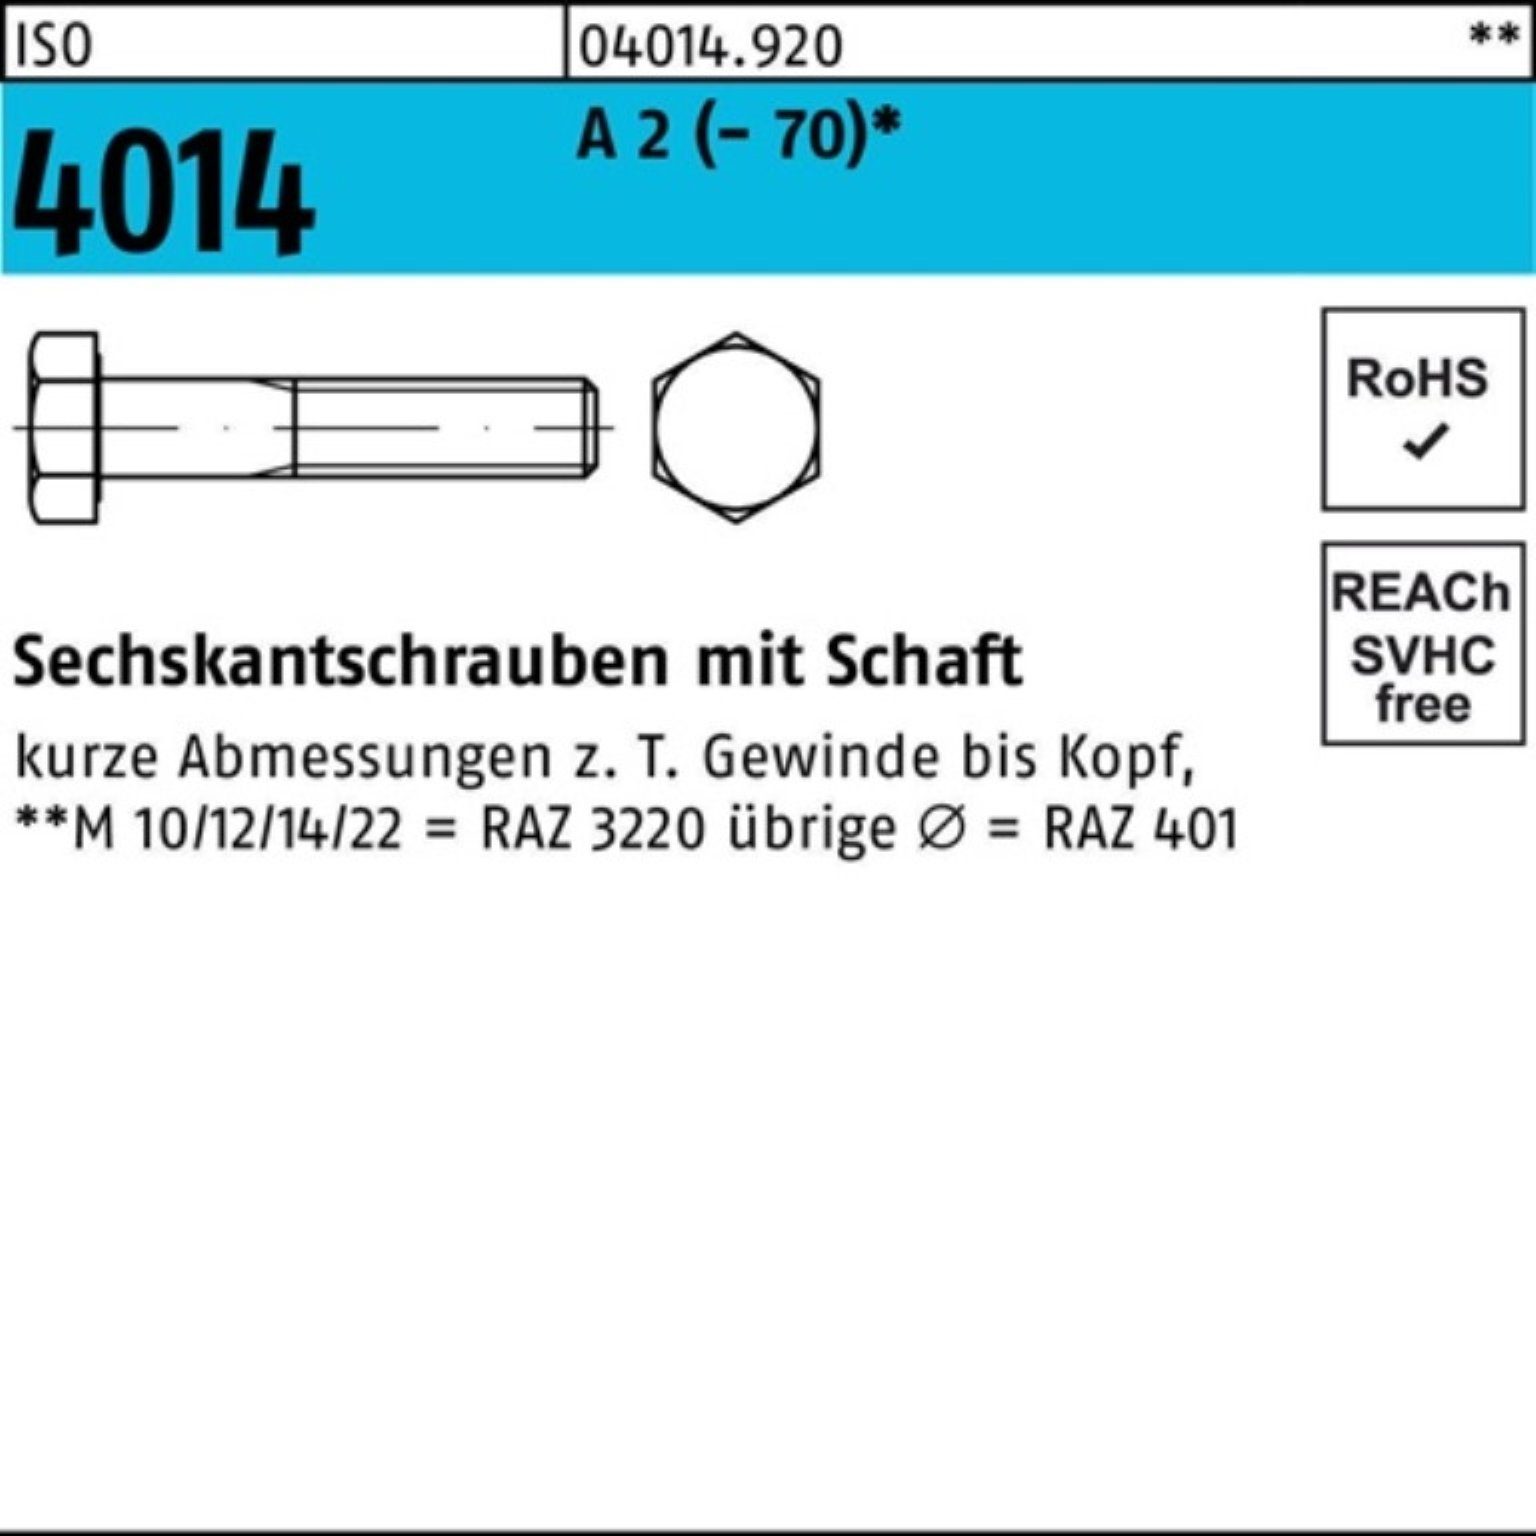 Bufab Sechskantschraube 100er Pack Sechskantschraube 1 230 4014 (70) 2 St A M16x ISO Schaft